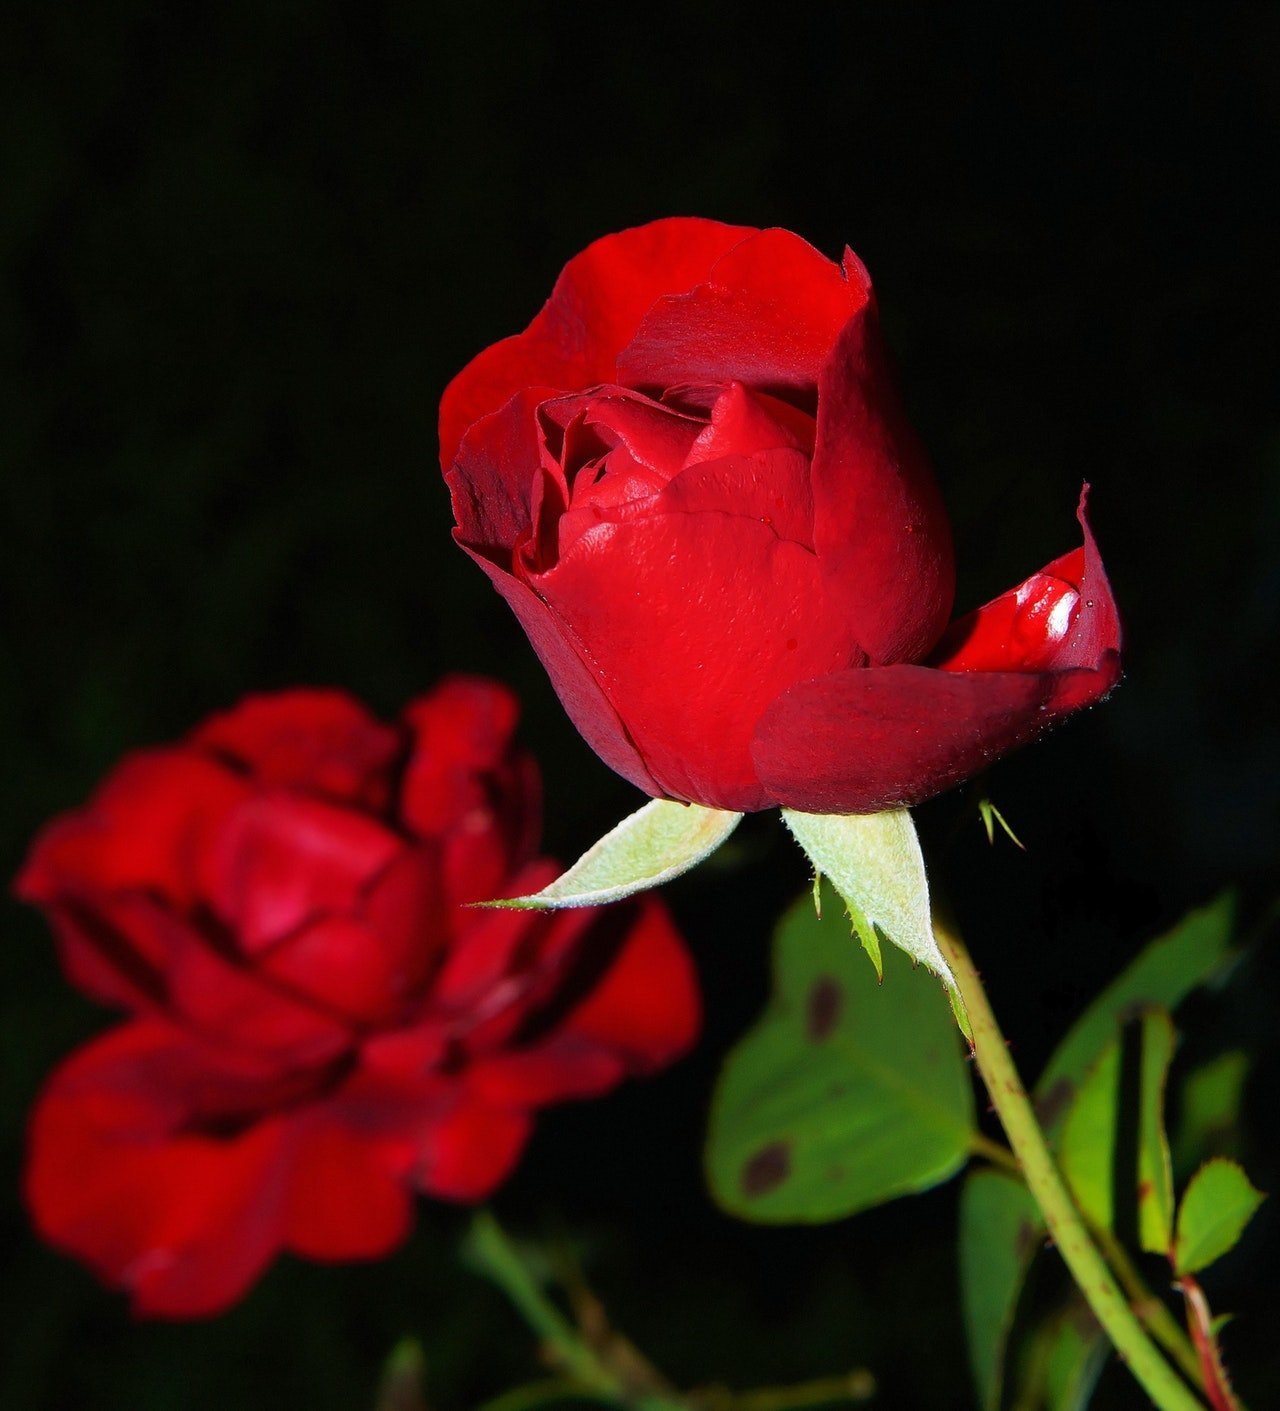 Imagem ampliada de rosas vermelhas sobre fundo preto.